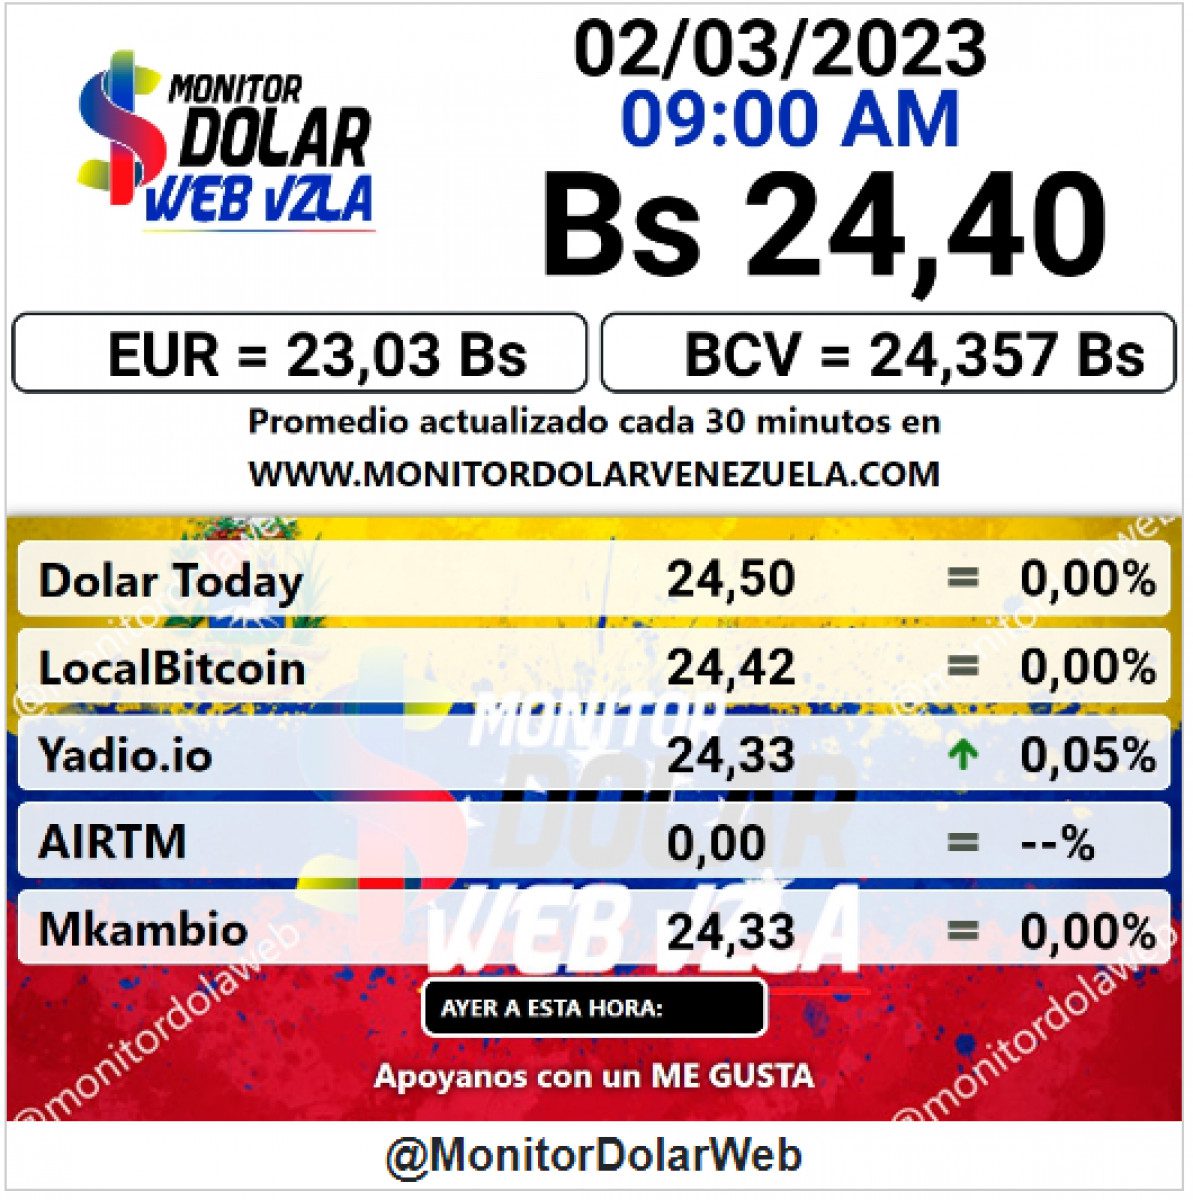 dolartoday en venezuela precio del dolar este jueves 2 de marzo de 2023 laverdaddemonagas.com monitor1